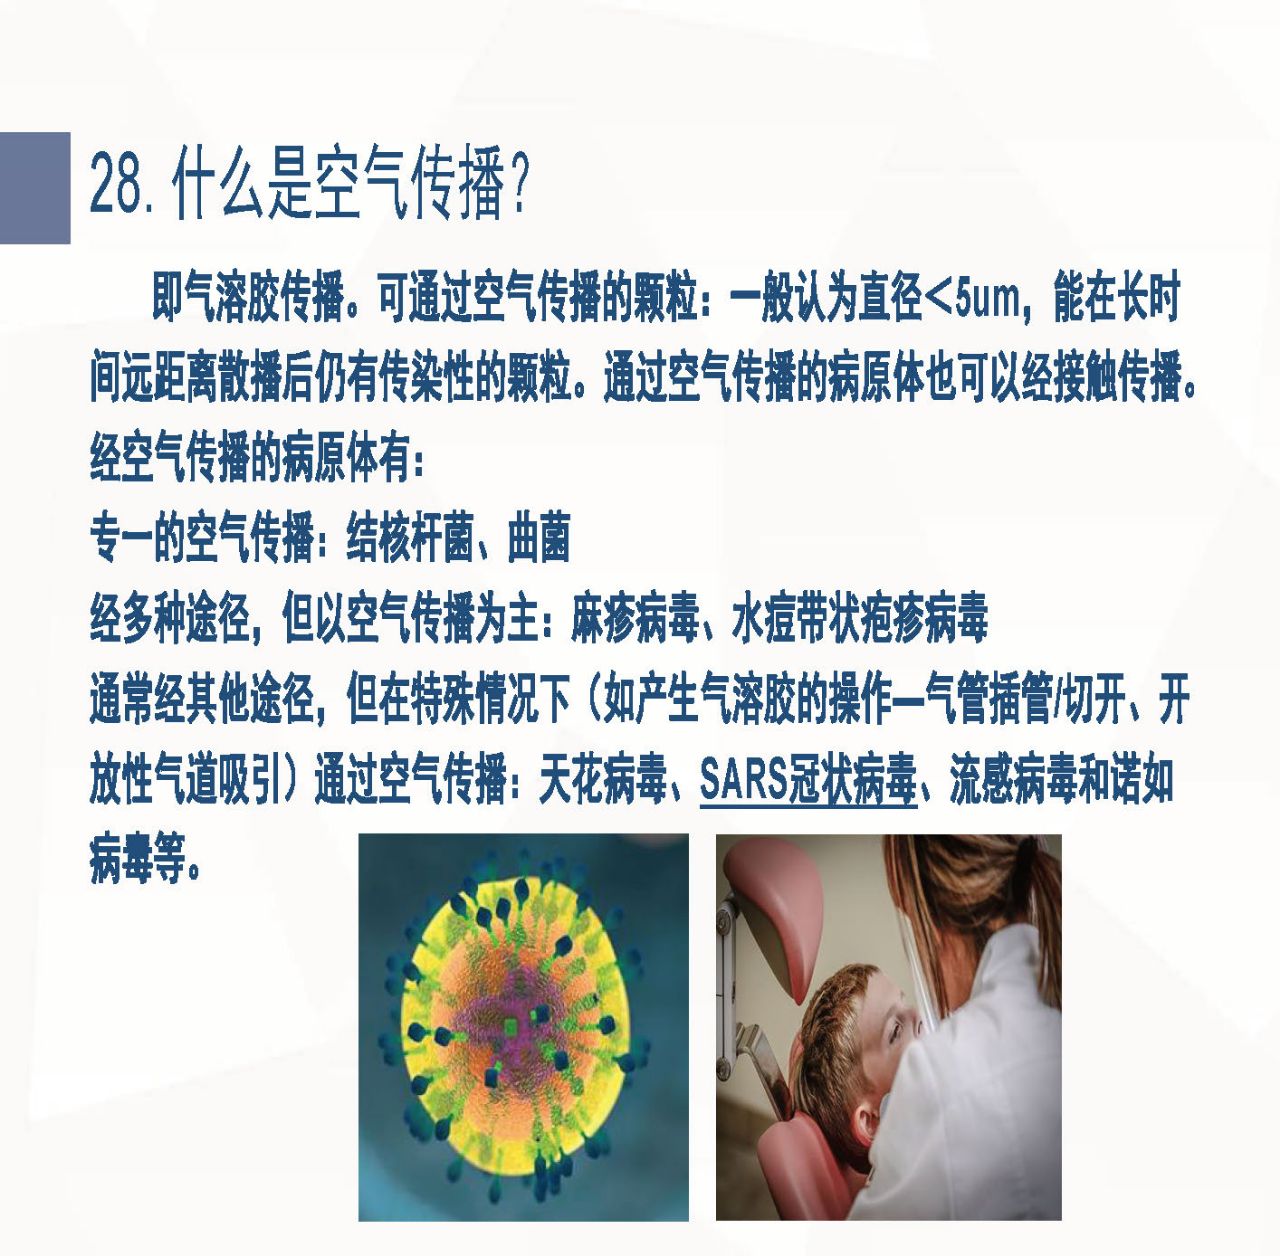 新型冠状病毒肺炎预防手册_页面_035